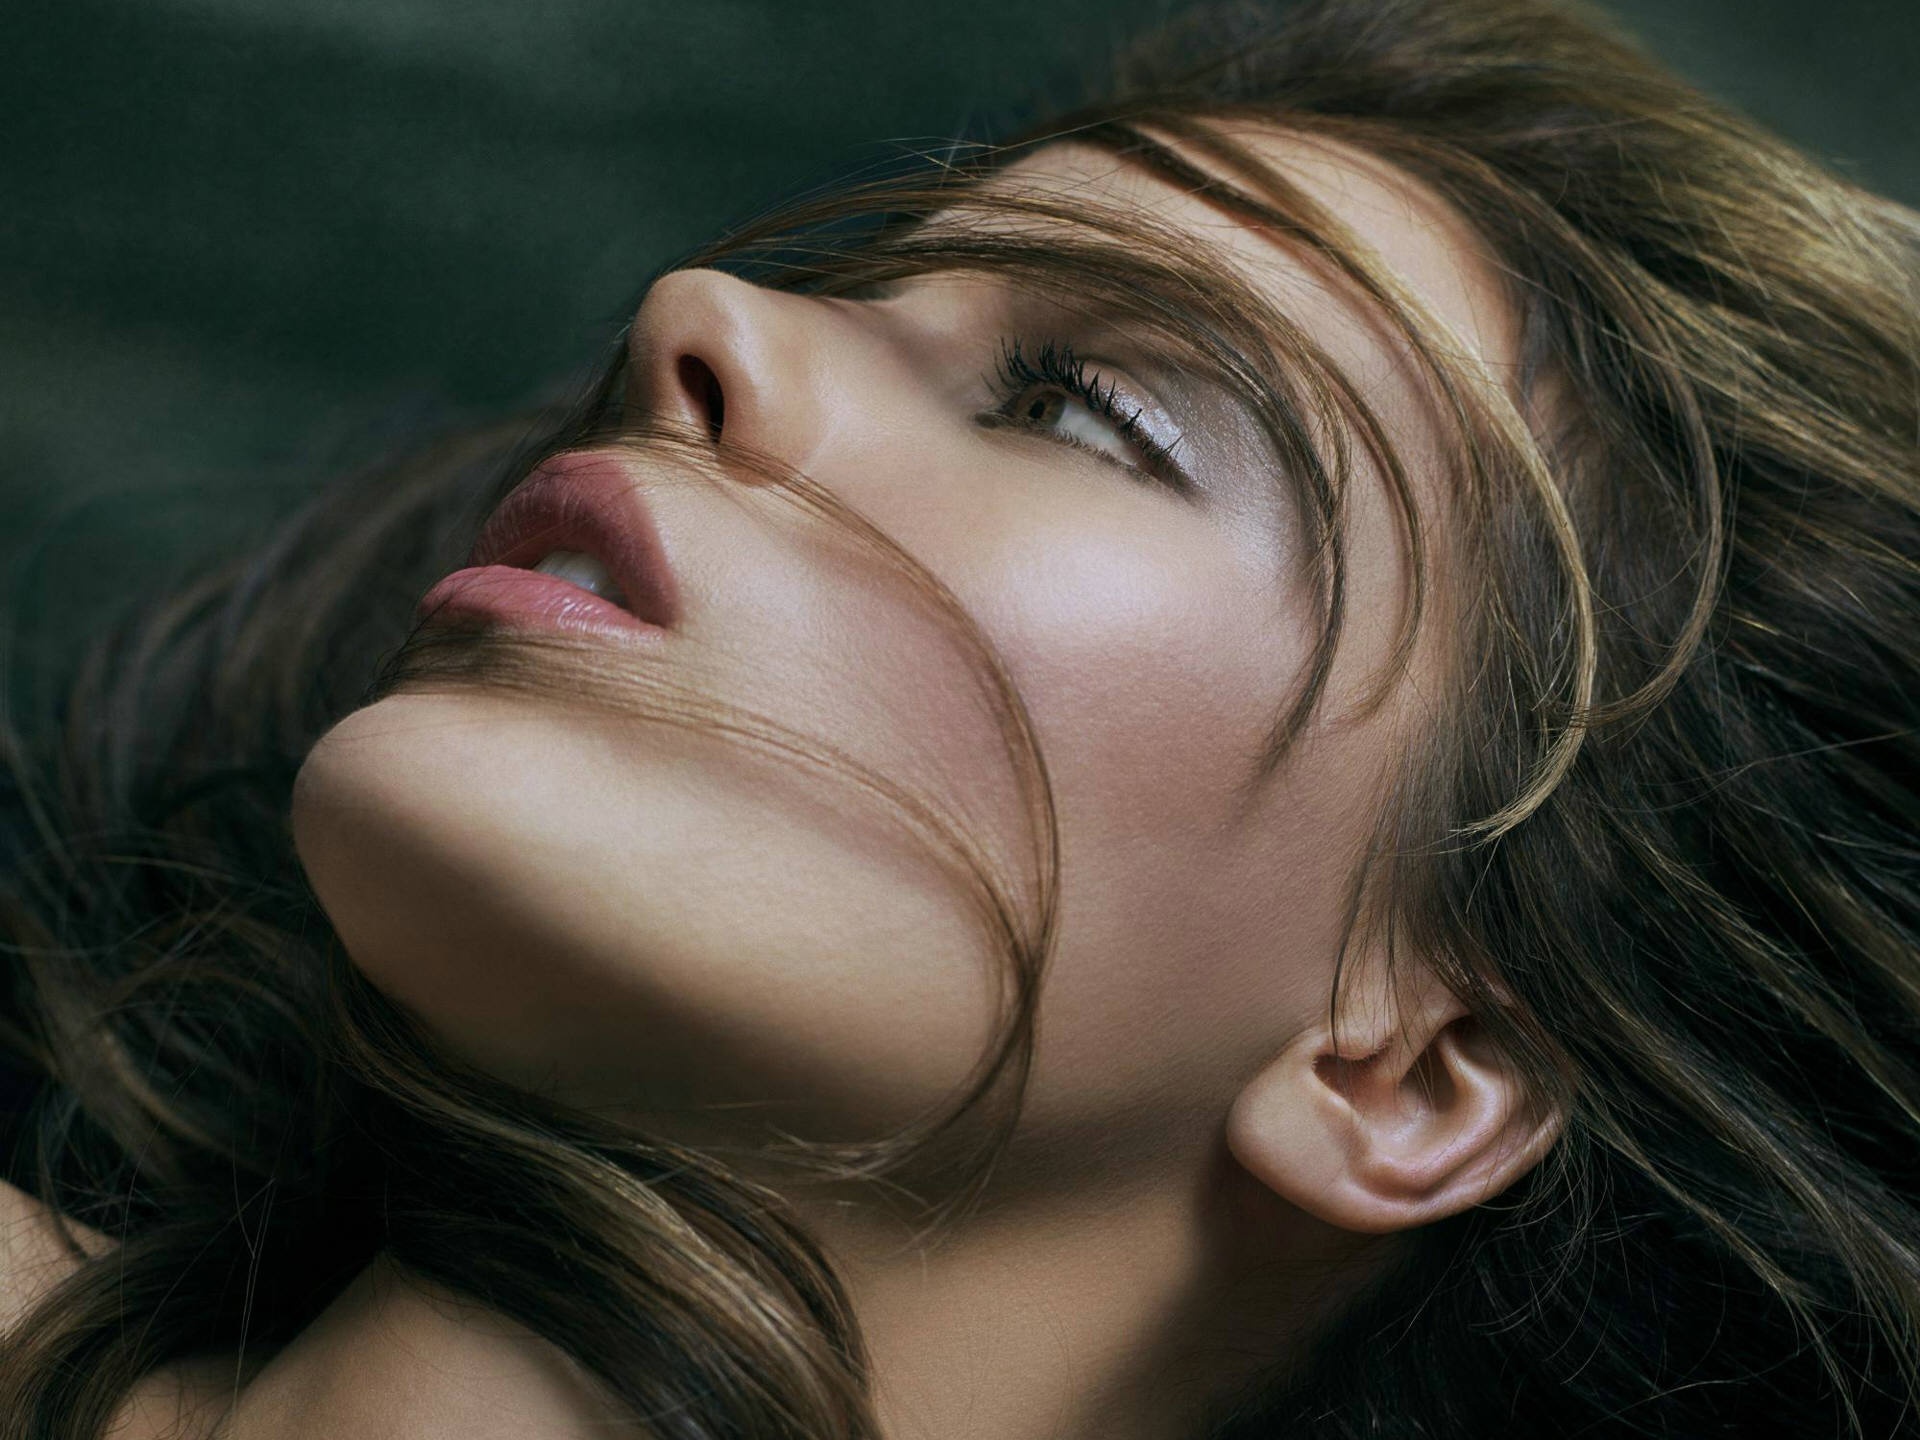 women, Kate Beckinsale, faces - desktop wallpaper